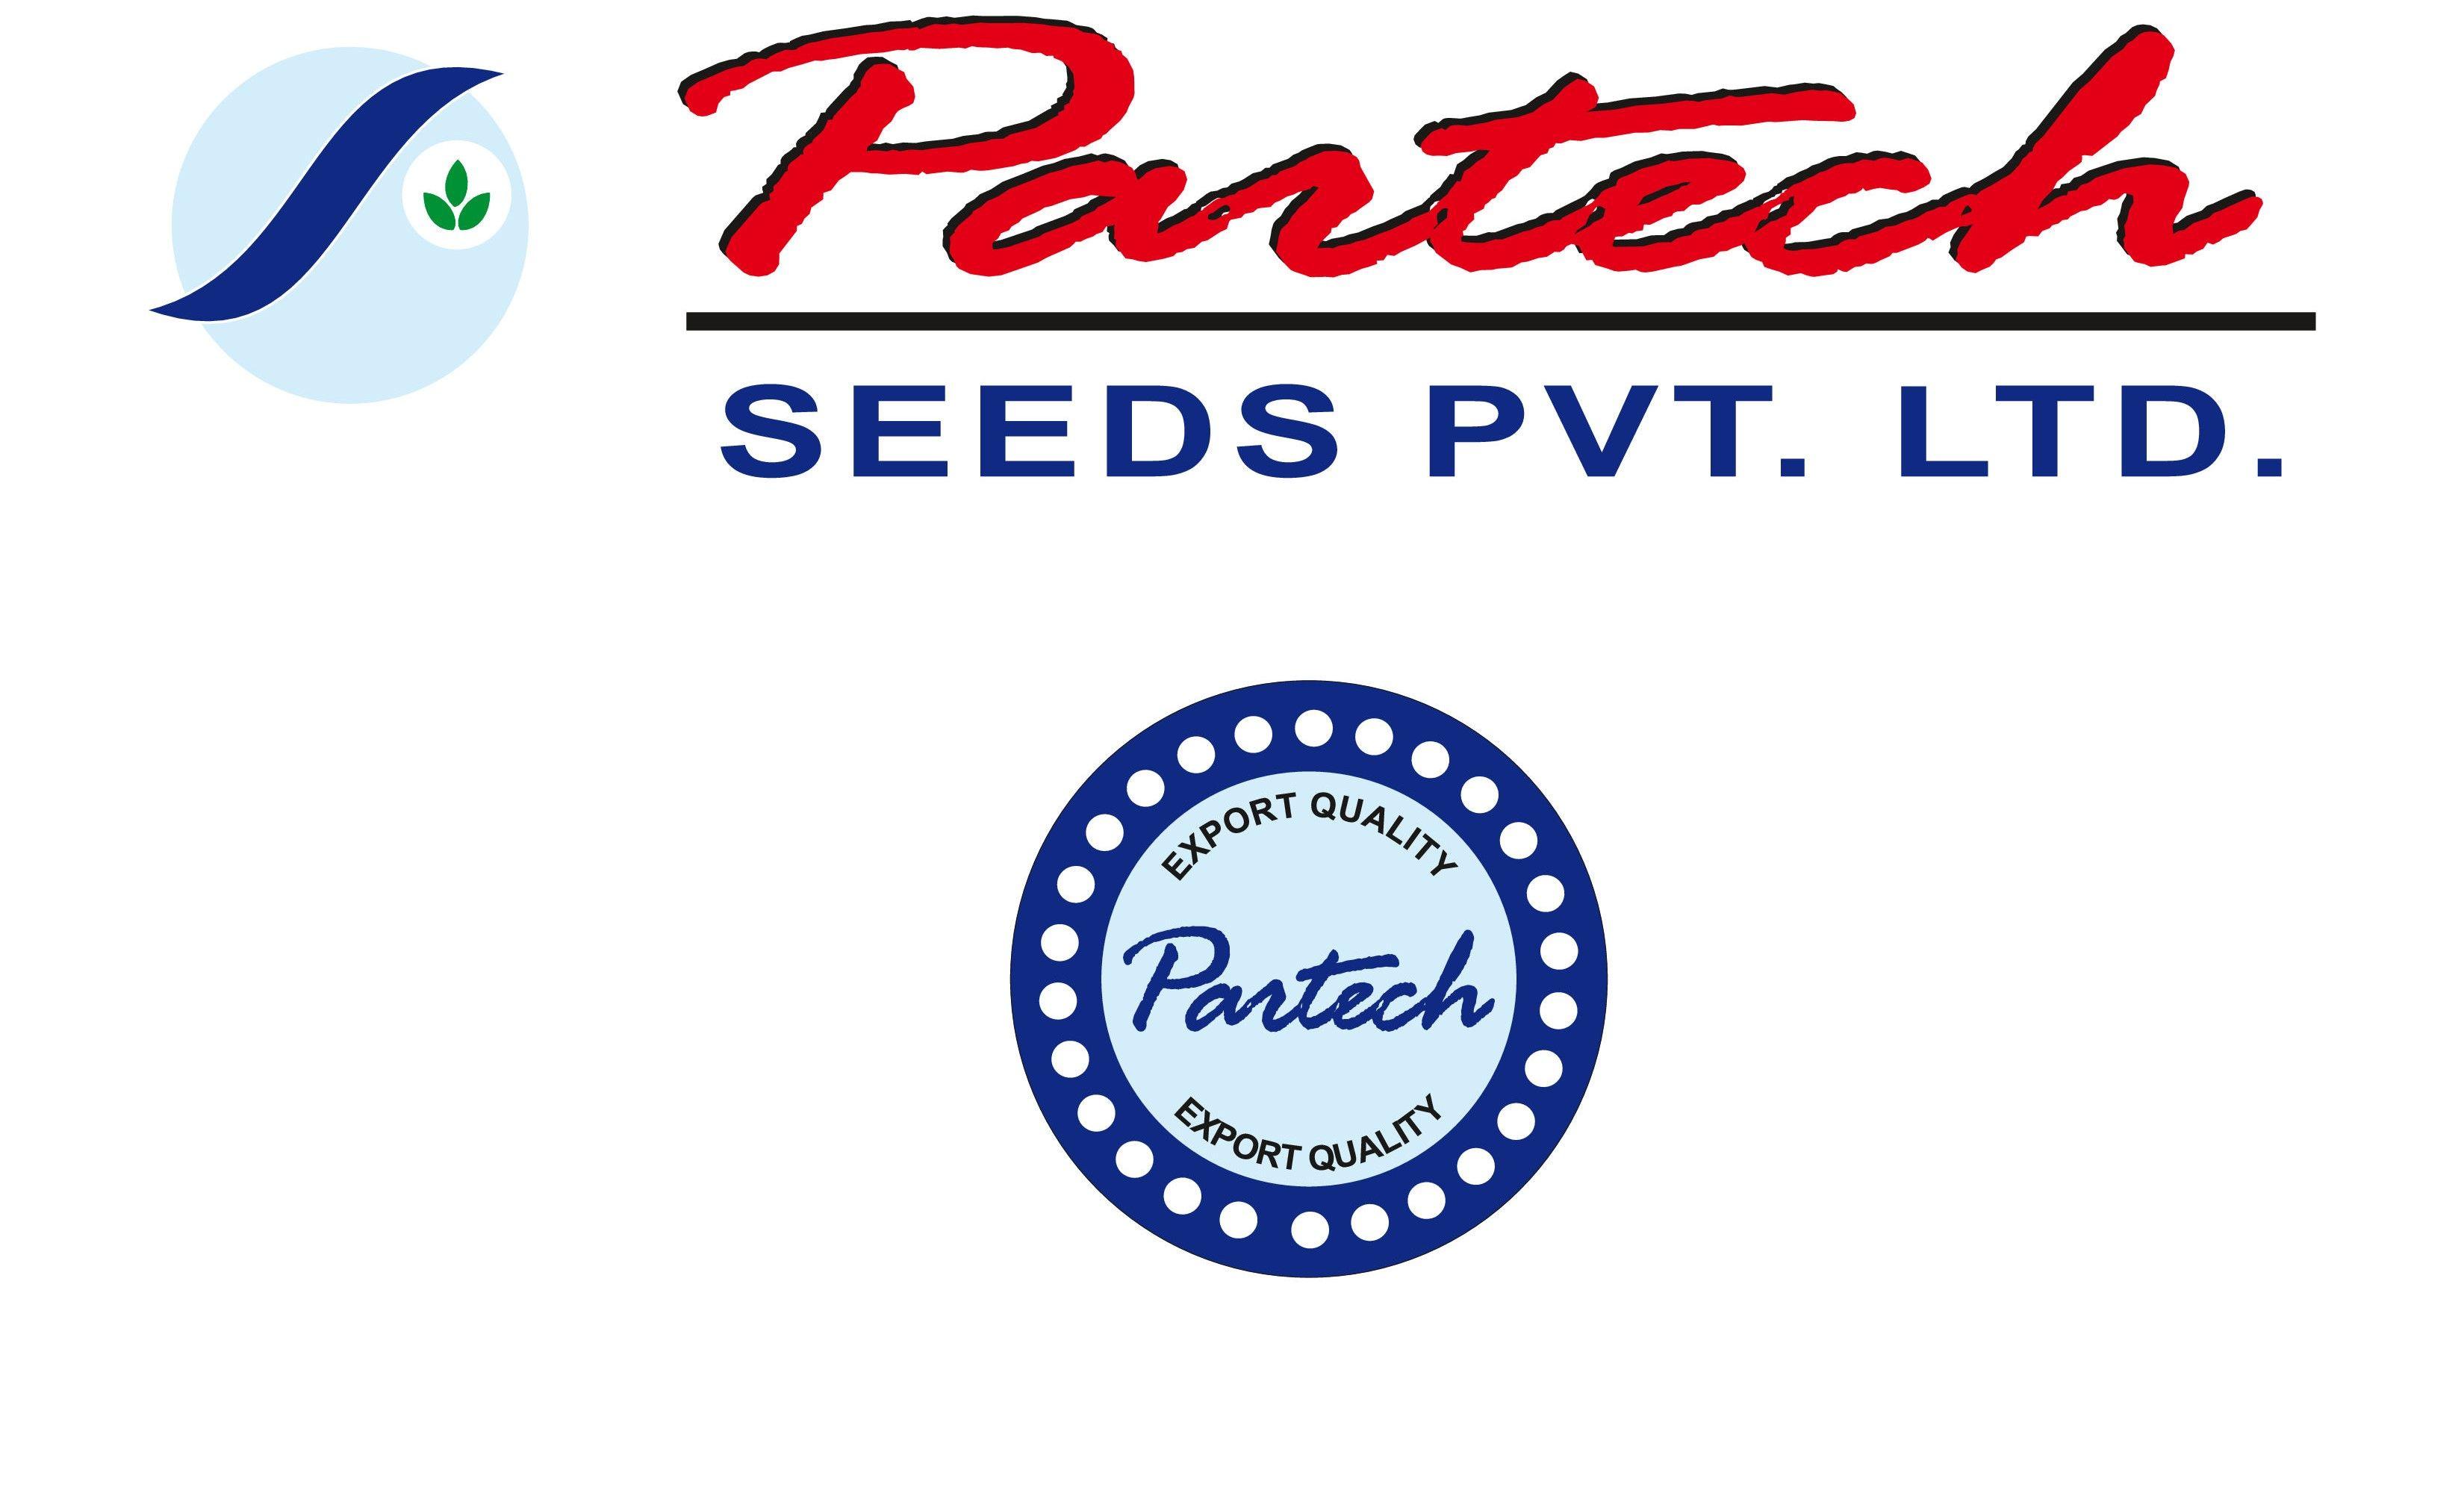 PARTECH SEEDS PVT. LTD.